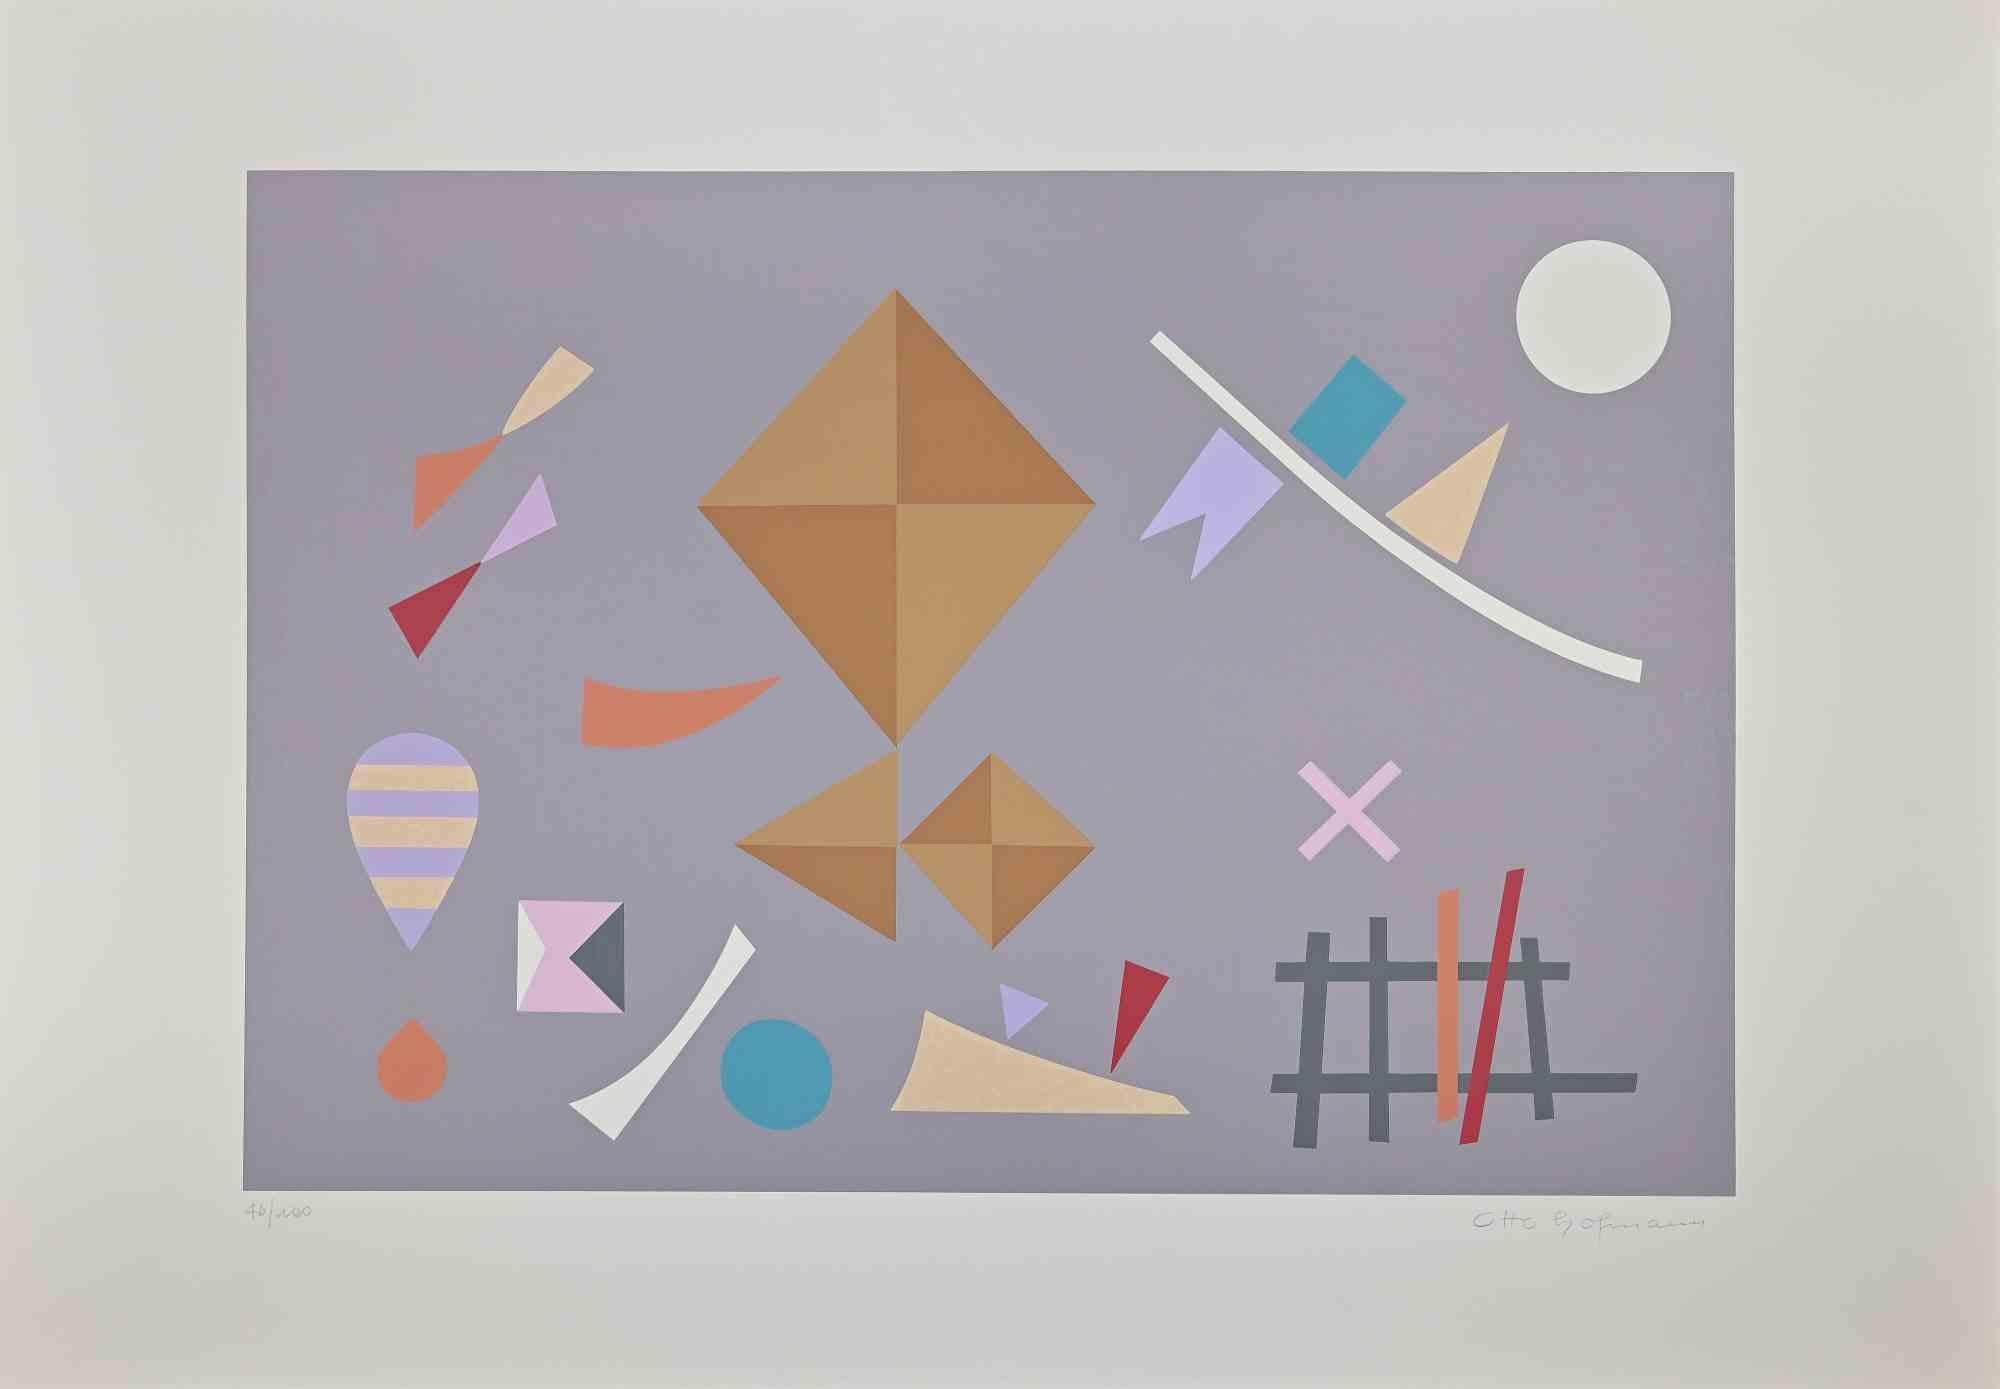 Grey composition ist ein originales zeitgenössisches Kunstwerk von Otto Hofmann aus dem Jahr 1989.

Gemischter farbiger Siebdruck.

Handsigniert am unteren rechten Rand.

Links unten nummeriert. Auflage von 46/100.

Das Kunstwerk stammt aus einem